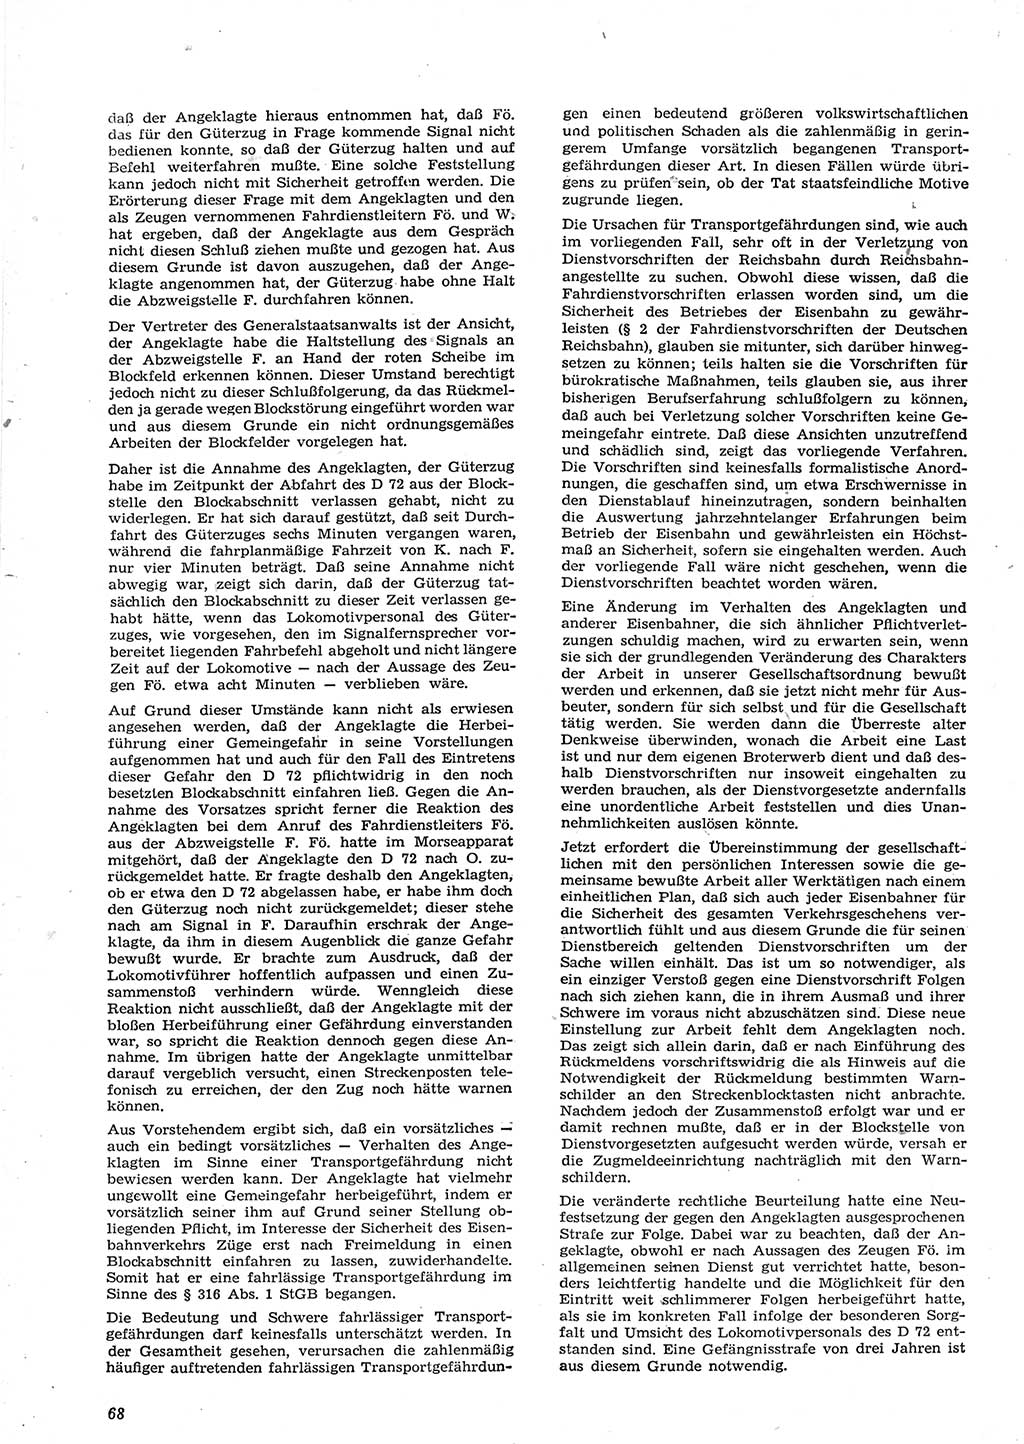 Neue Justiz (NJ), Zeitschrift für Recht und Rechtswissenschaft [Deutsche Demokratische Republik (DDR)], 15. Jahrgang 1961, Seite 68 (NJ DDR 1961, S. 68)